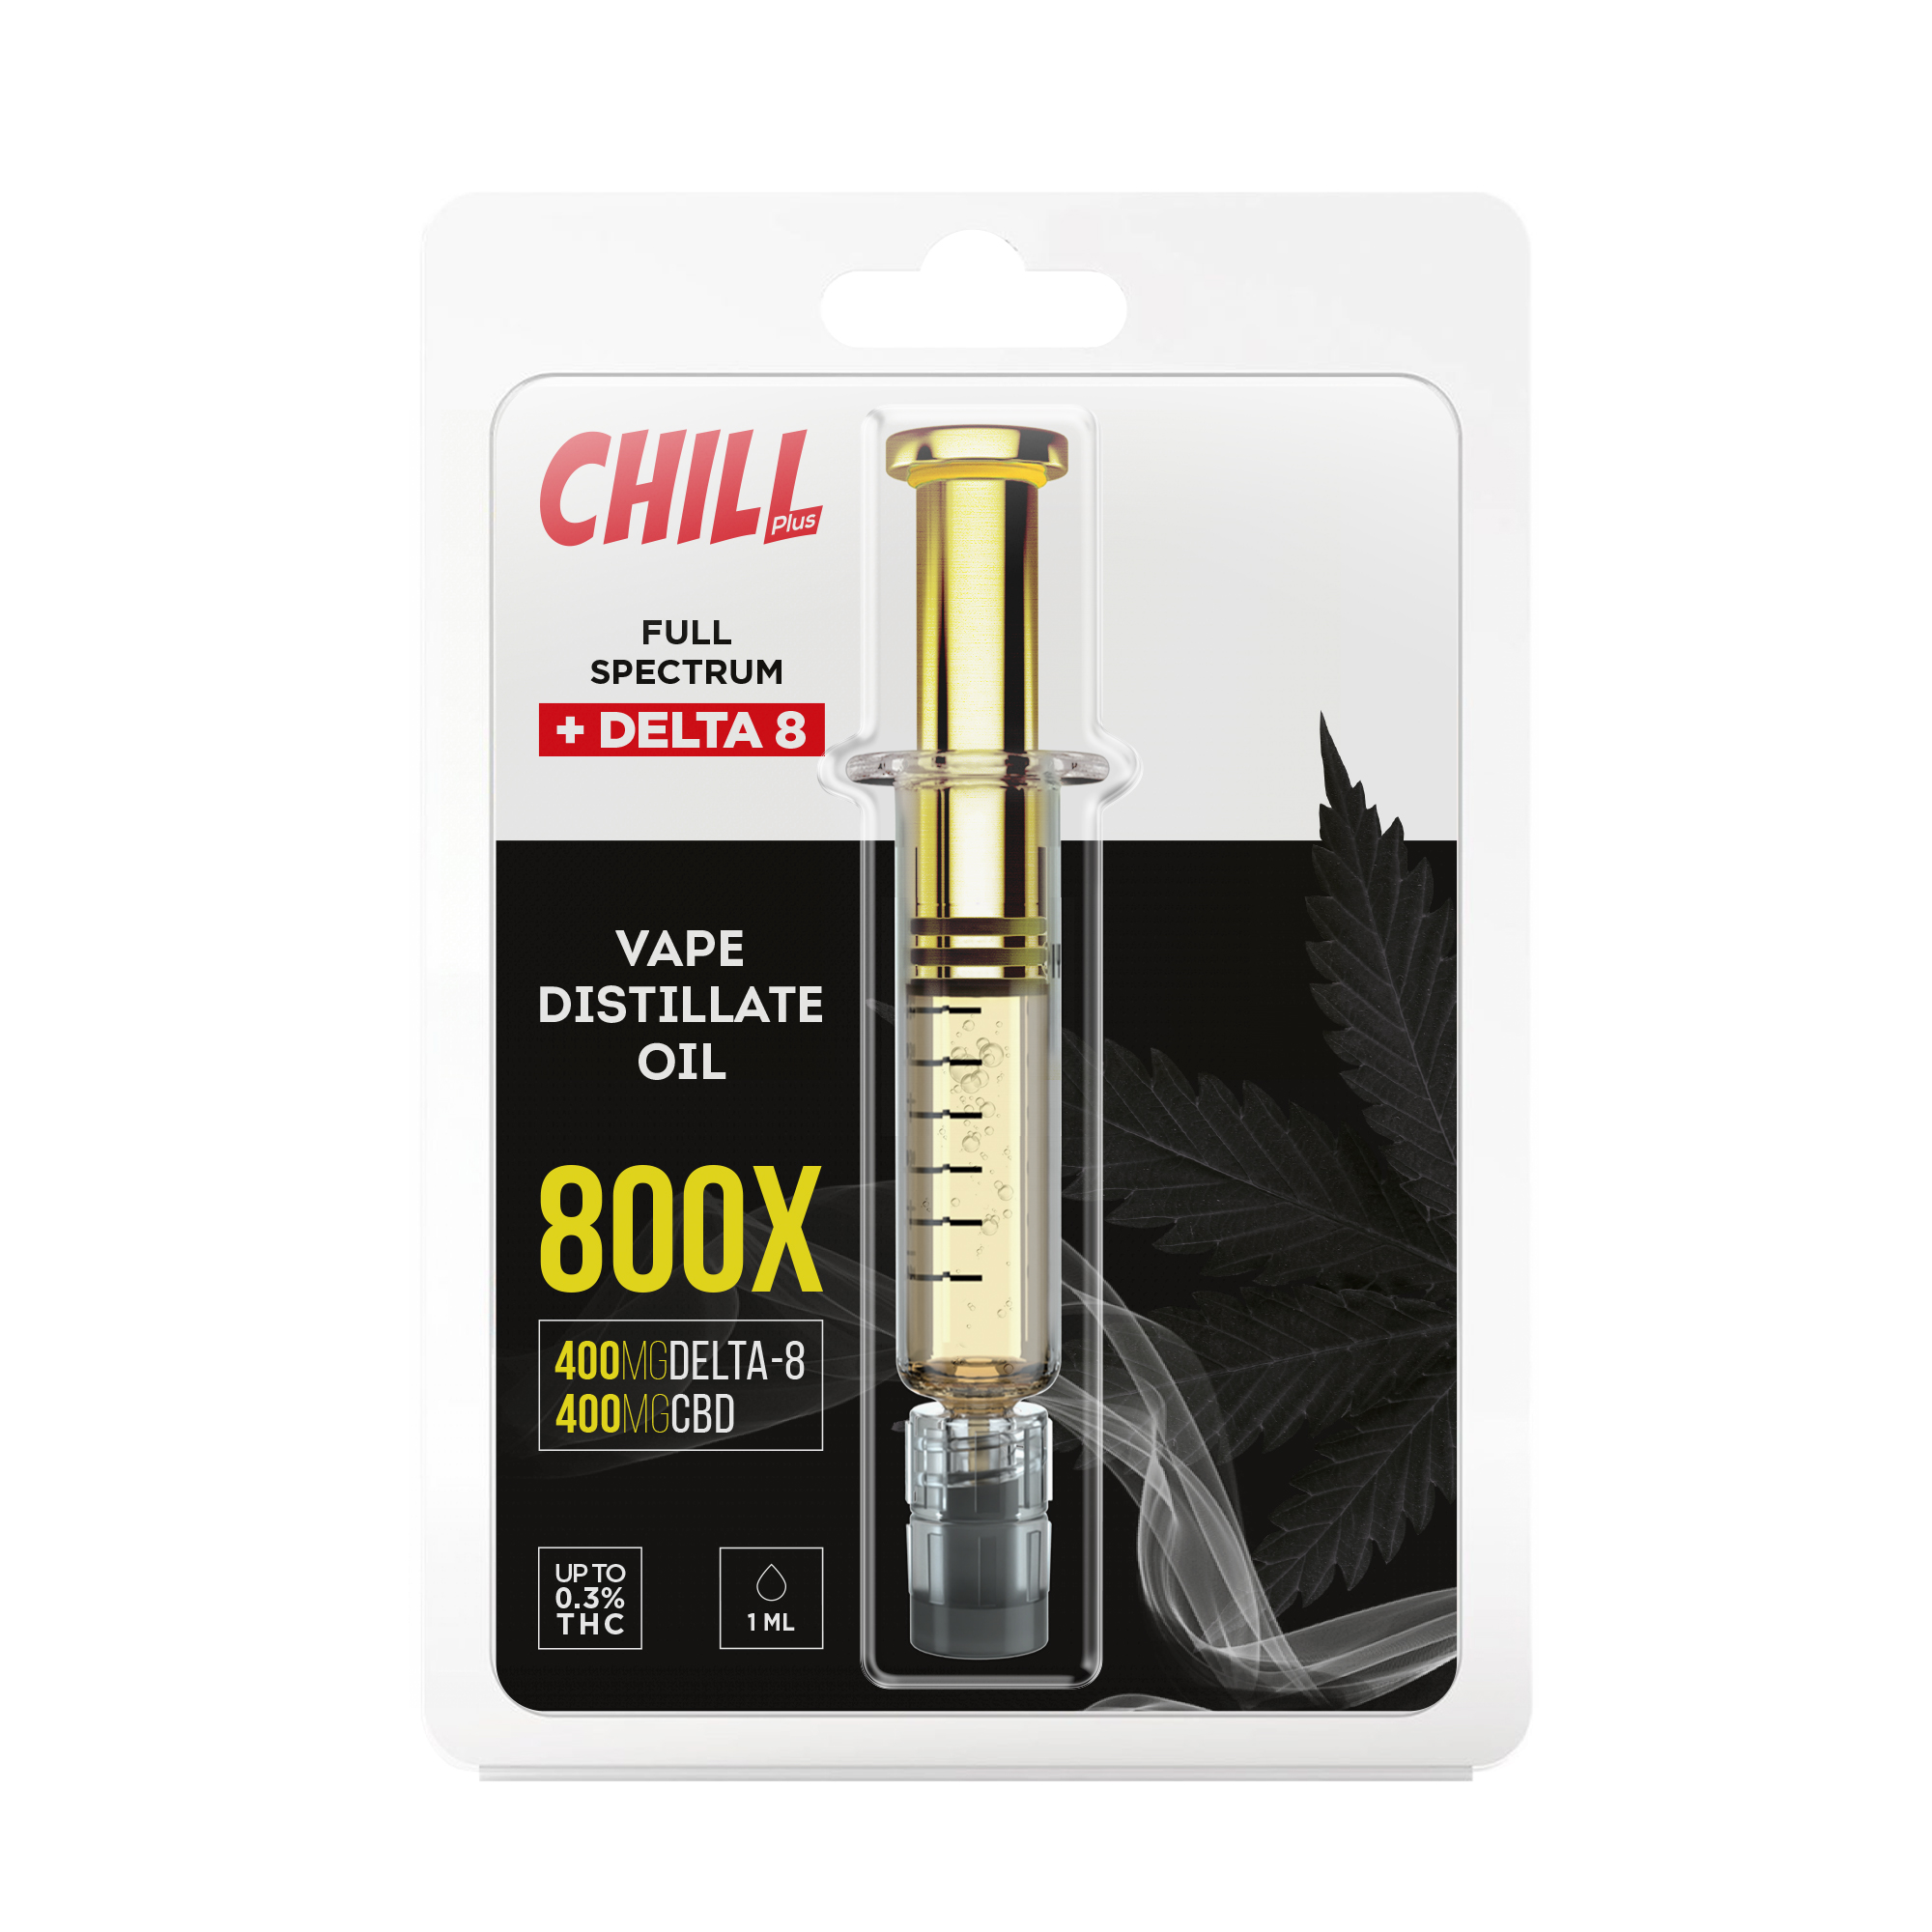 Chill Plus CBD + Delta-8 Vape Distillate Oil Concentrate Syringe- 800X - Diamond CBD